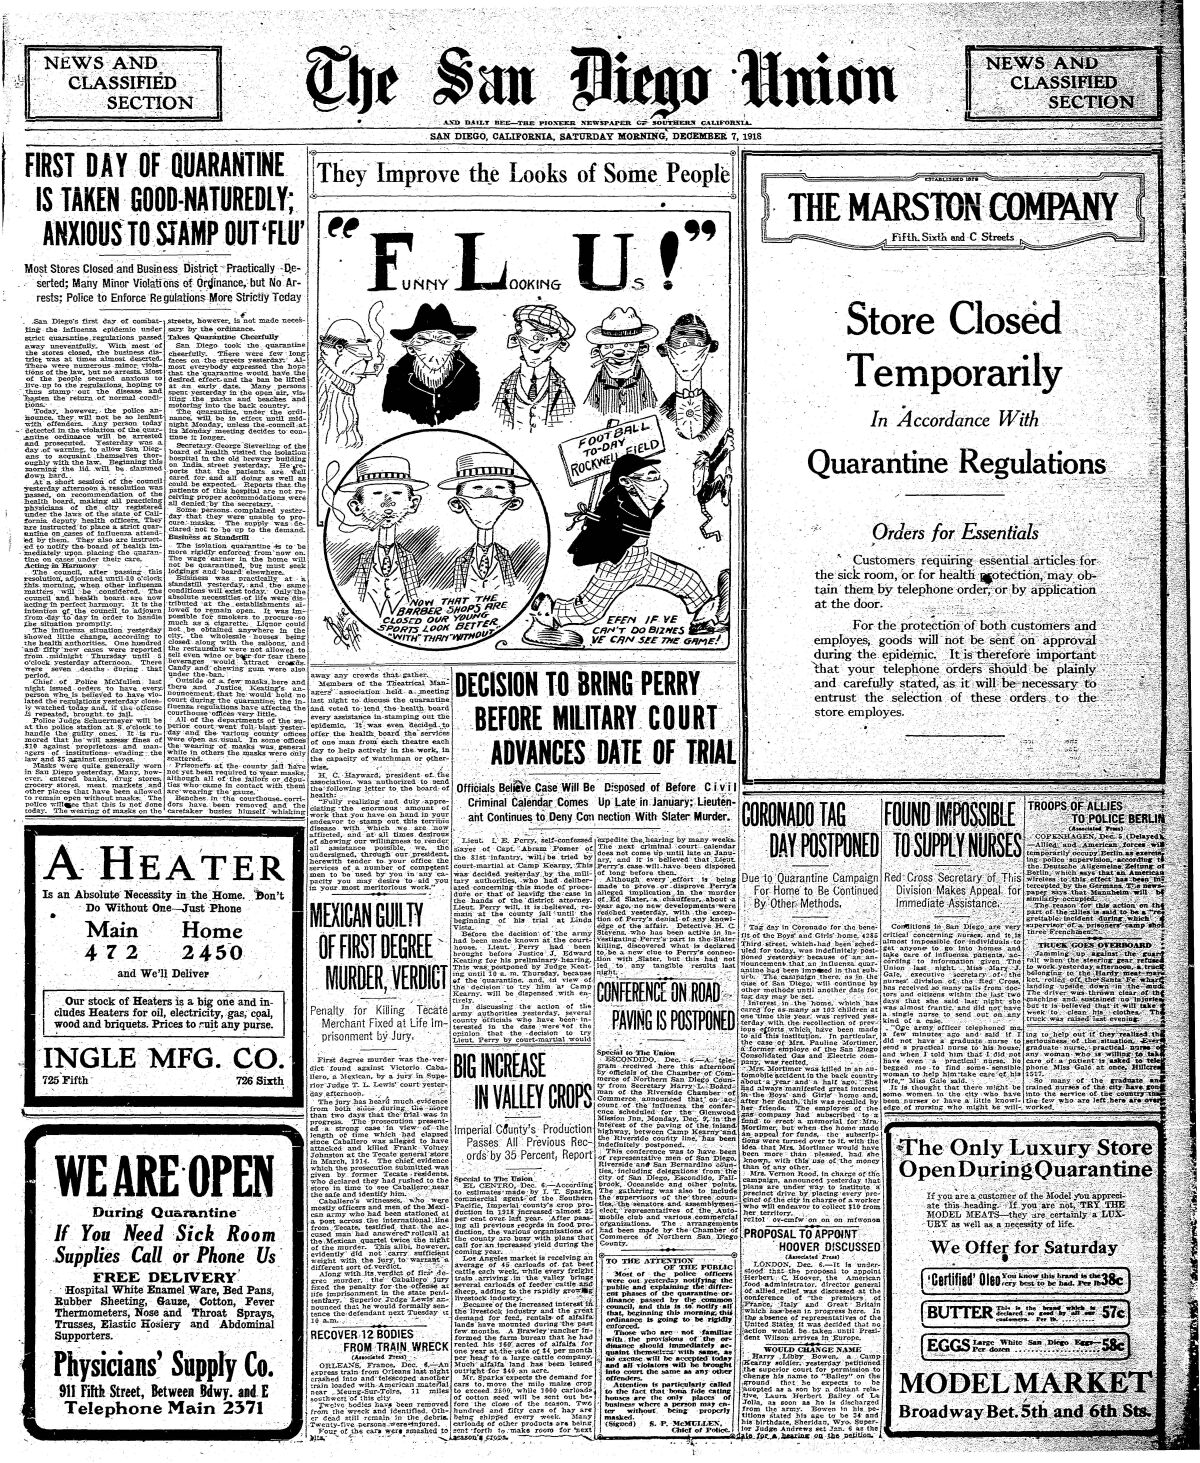 Flu cartoon published in The San Diego Union Dec. 7, 1918.